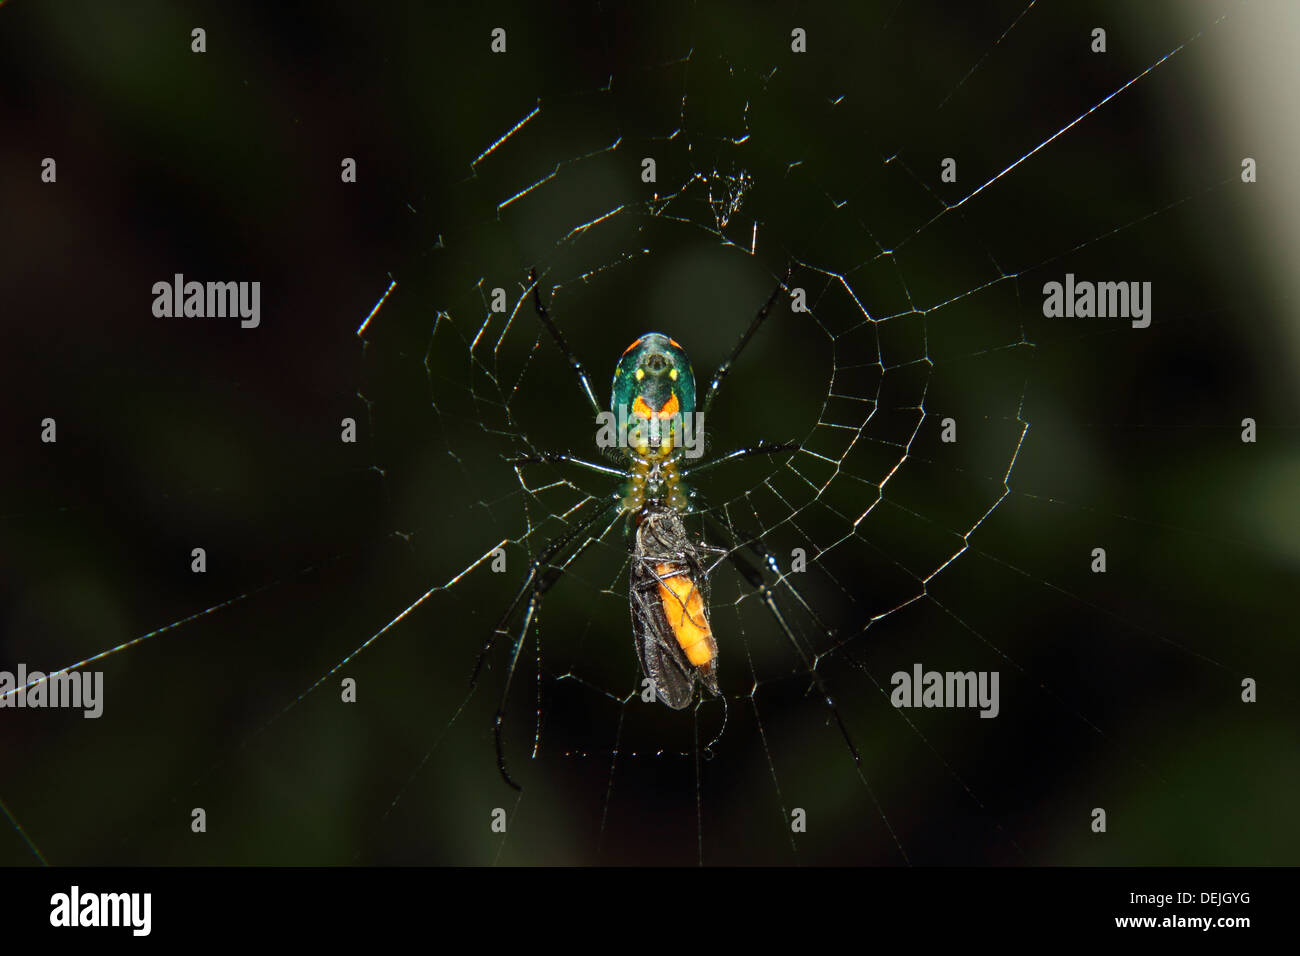 Un verger et capture spider rss sur un insecte. Banque D'Images